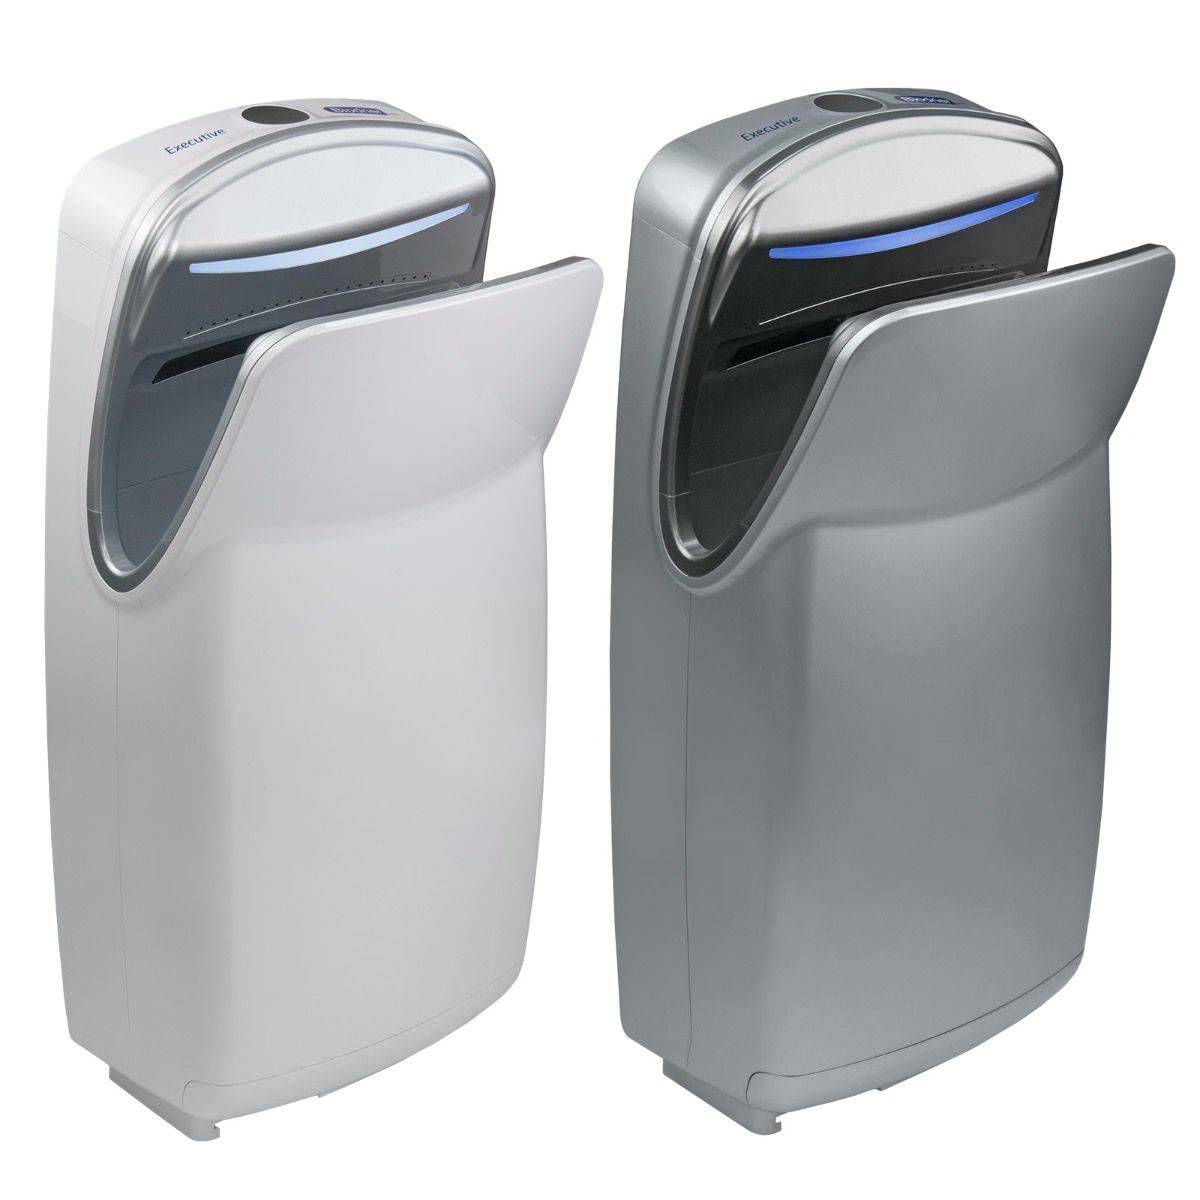 Biodrier Executive Hand Dryer - Hands-In Dryer